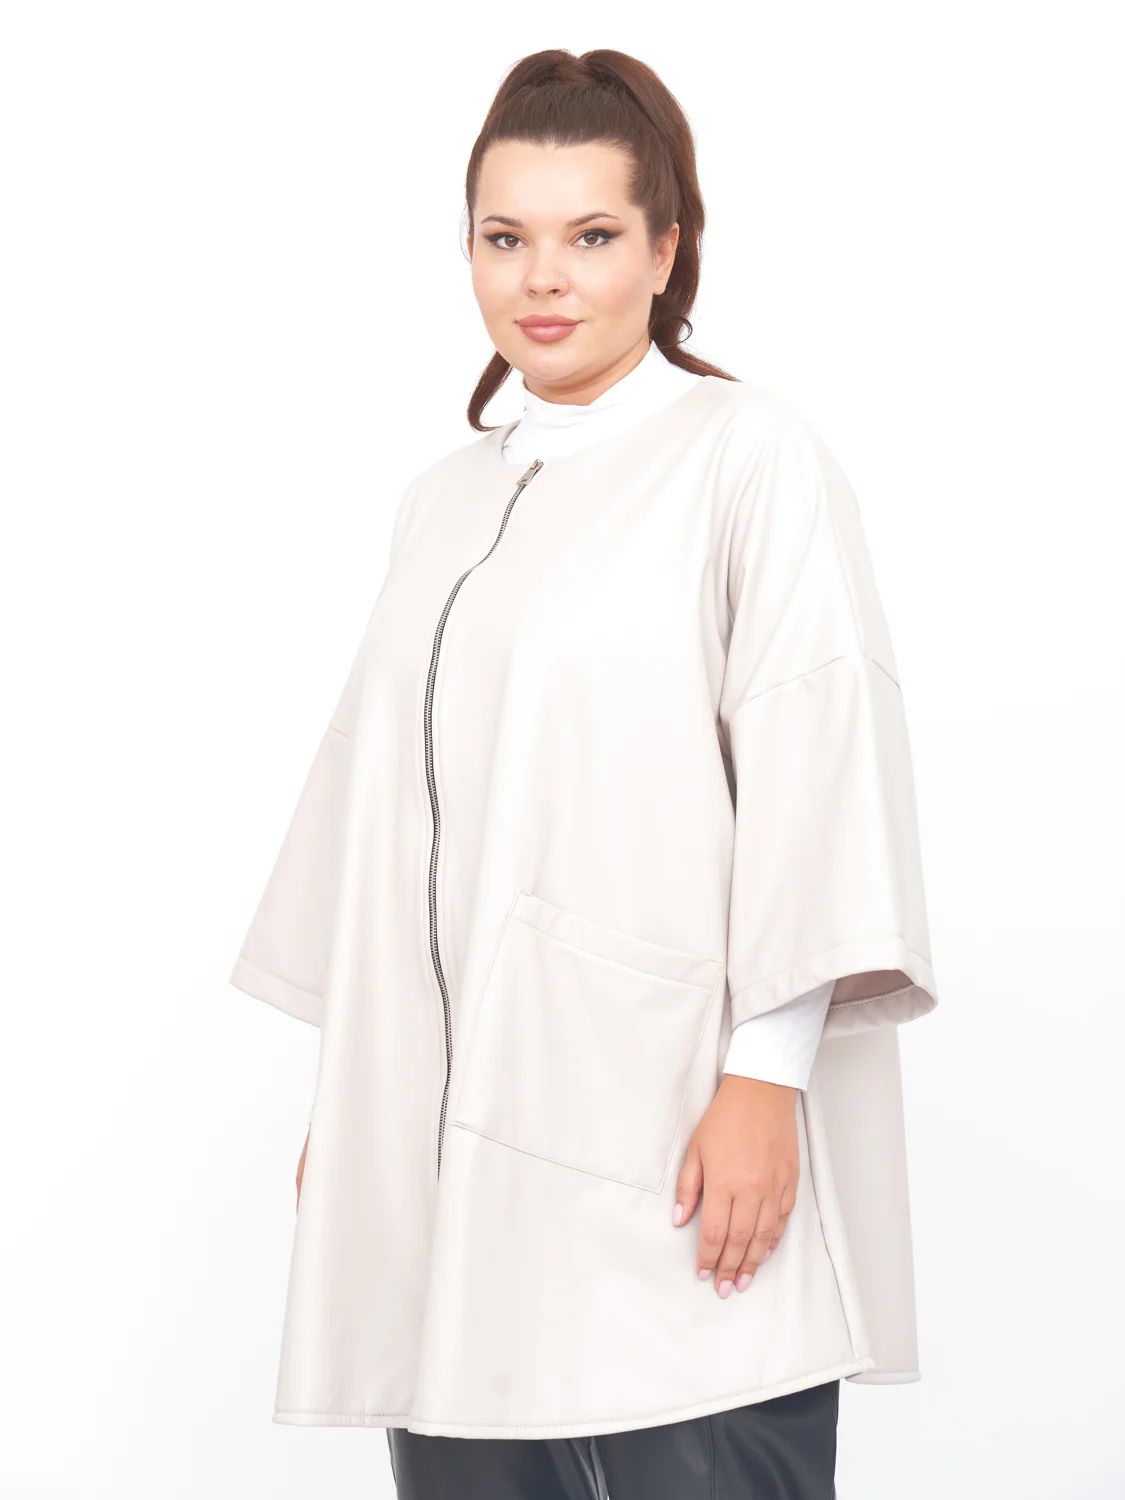 Пальто женское ZORY ZPL20021WHT03 белое 48-50 RU